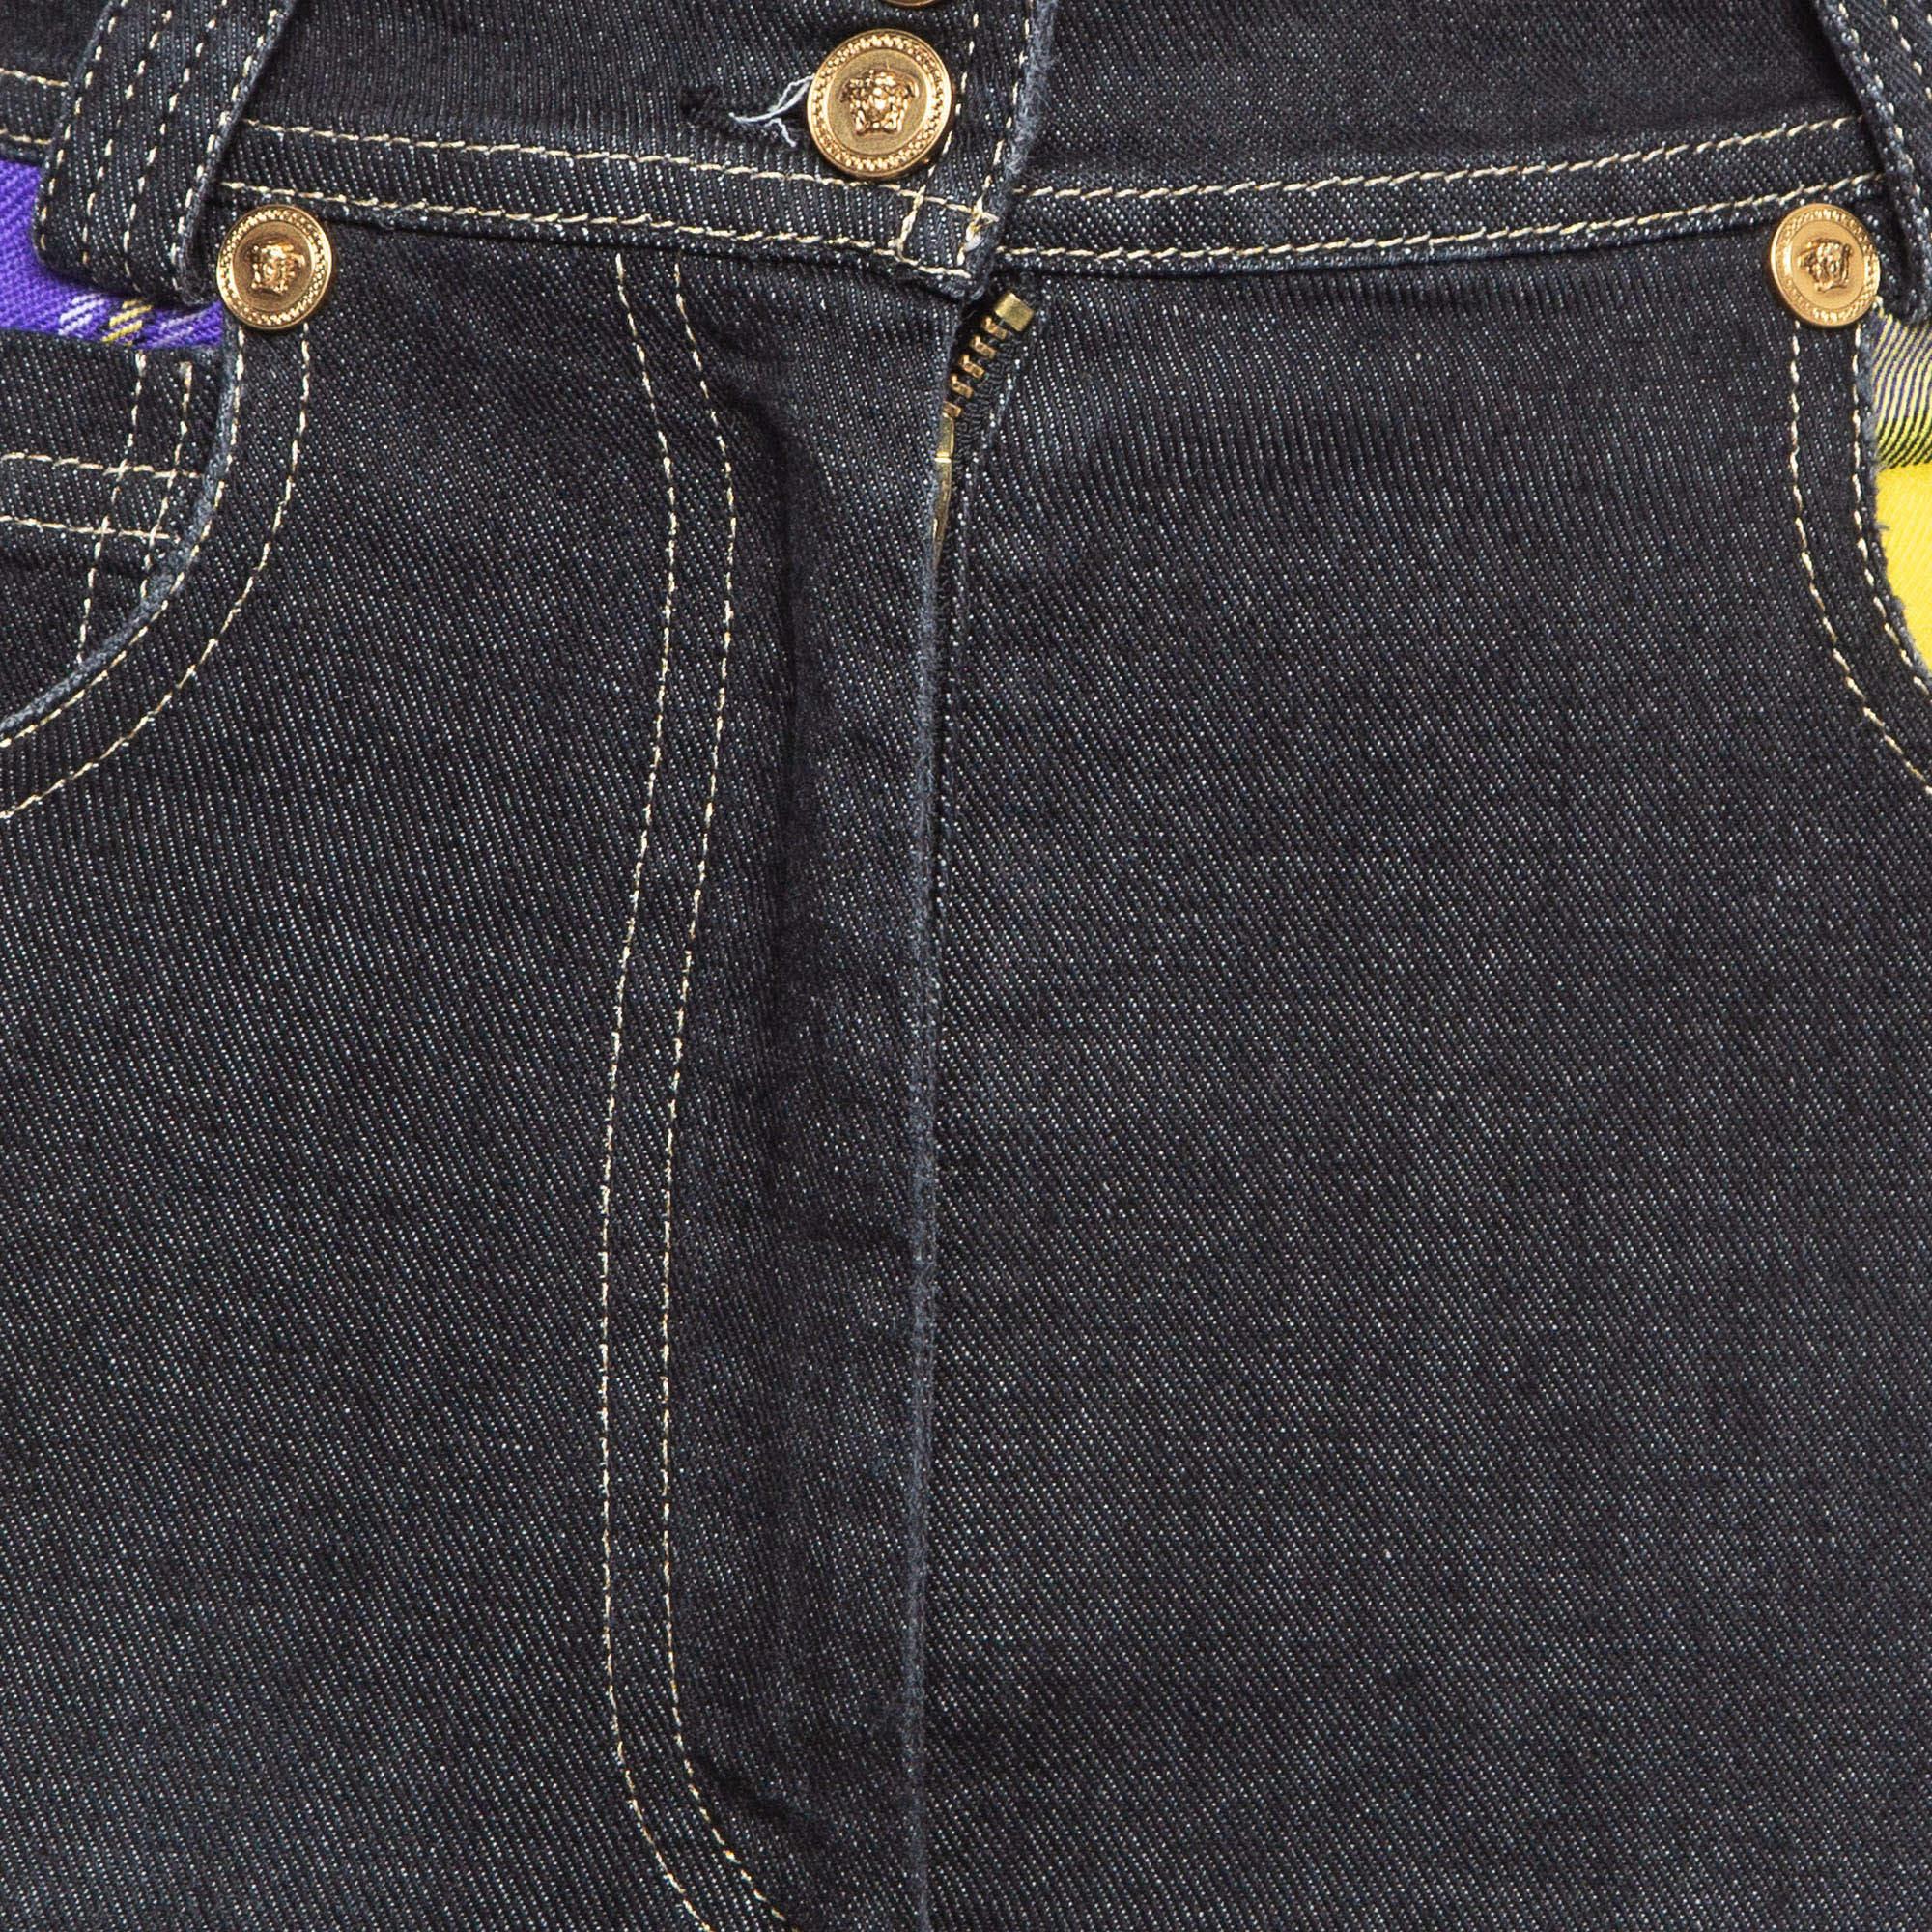 Women's Versace Multicolor Plaid Patched Denim Jeans S Waist 25